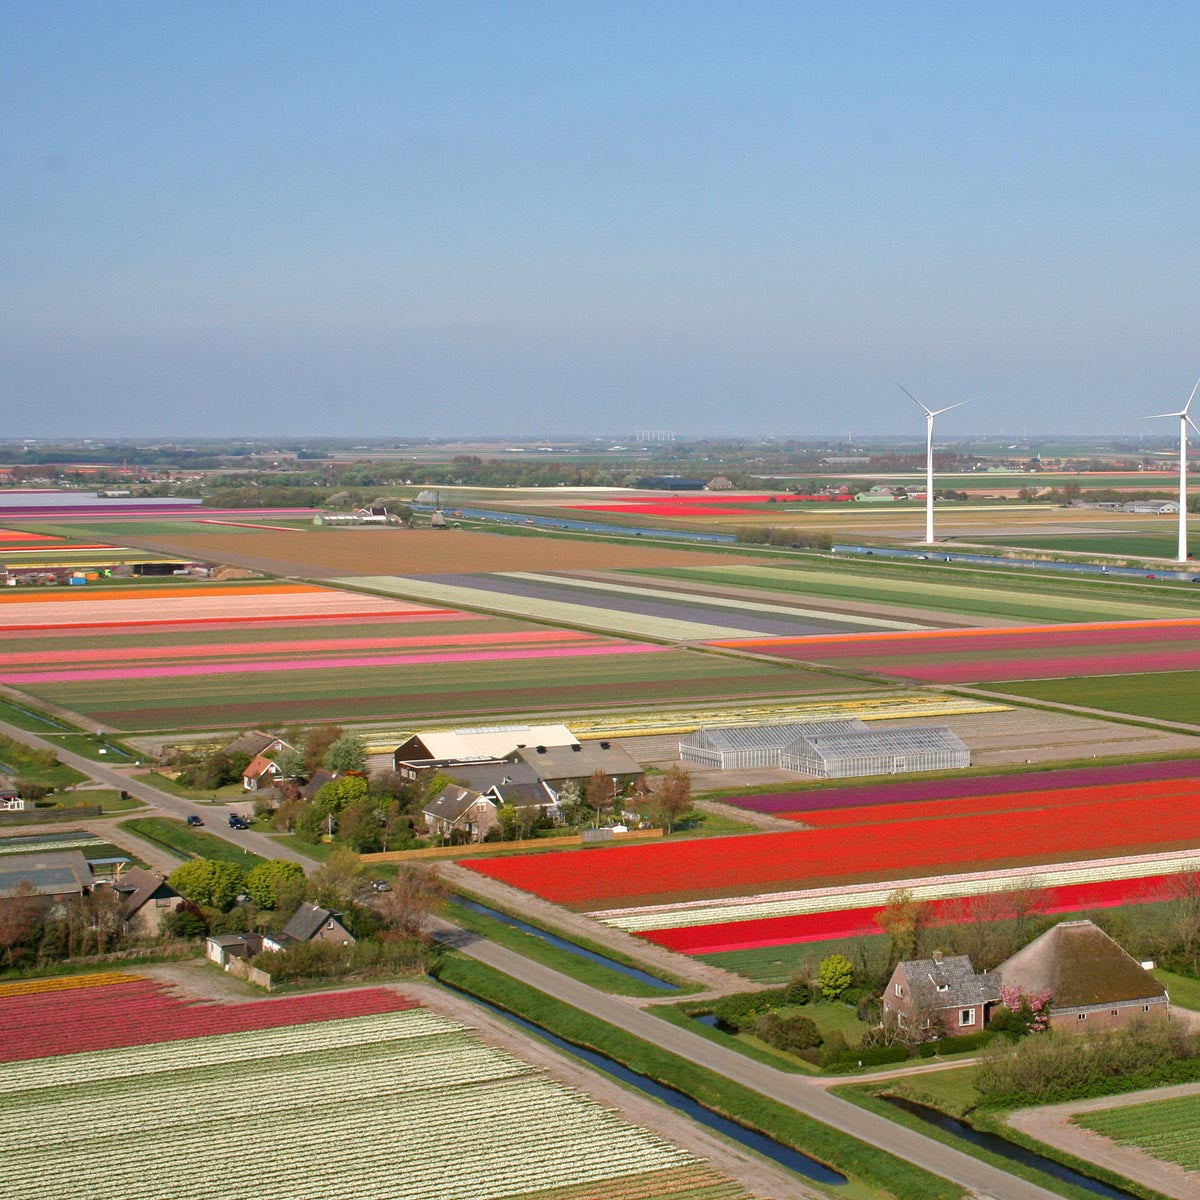 Tulpenfelder Noord Holland